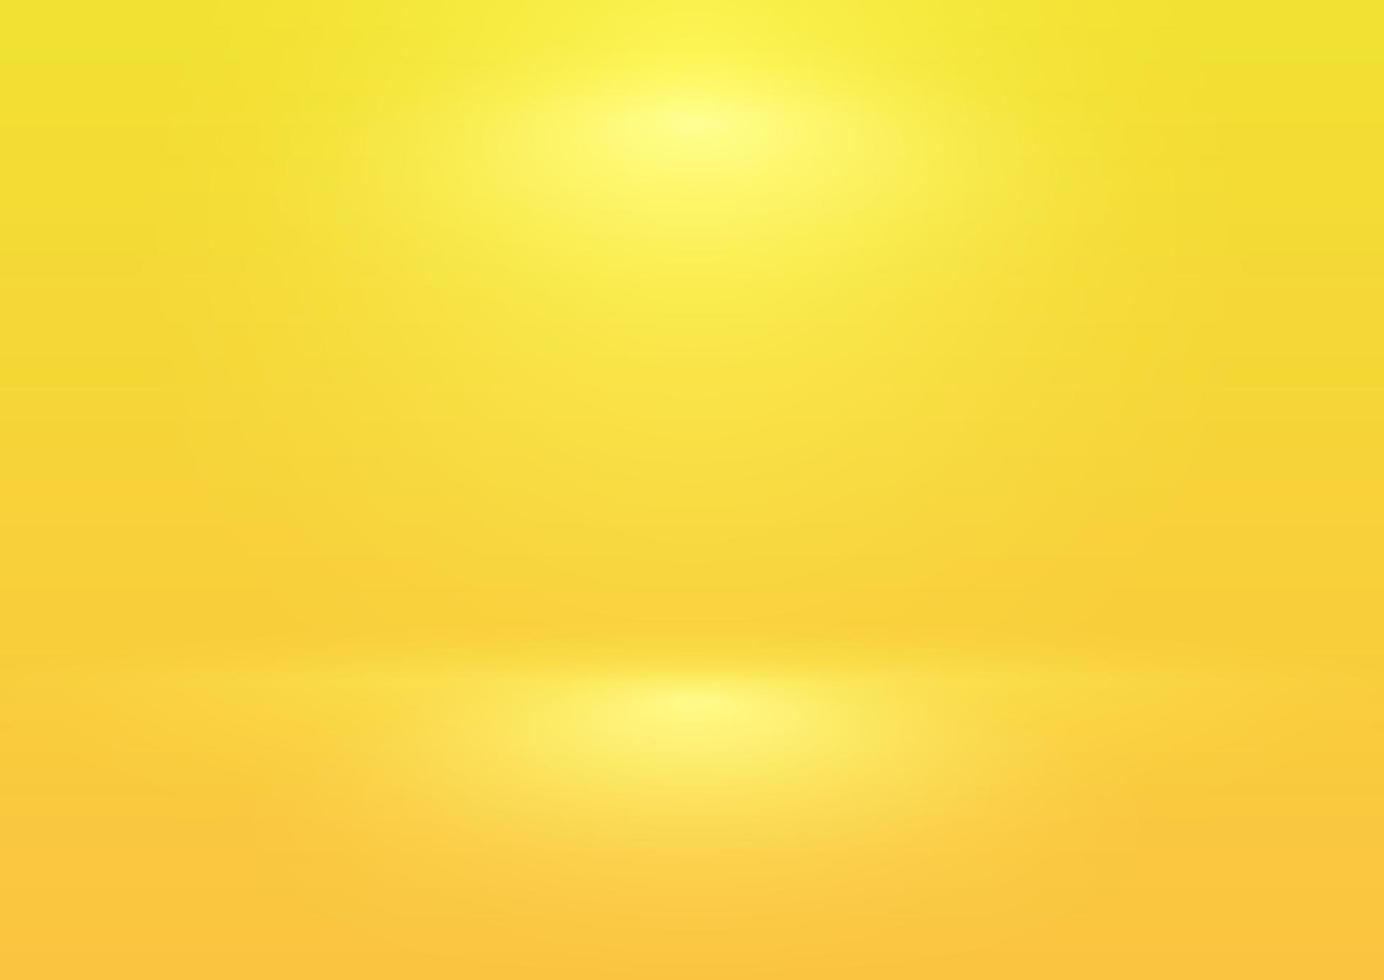 abstrakt frash ljus lyser på den gula bakgrunden med lutning oskärpa. bild kan användas som illustration, produktreklambakgrundsbild, mall och bakgrund. vektor